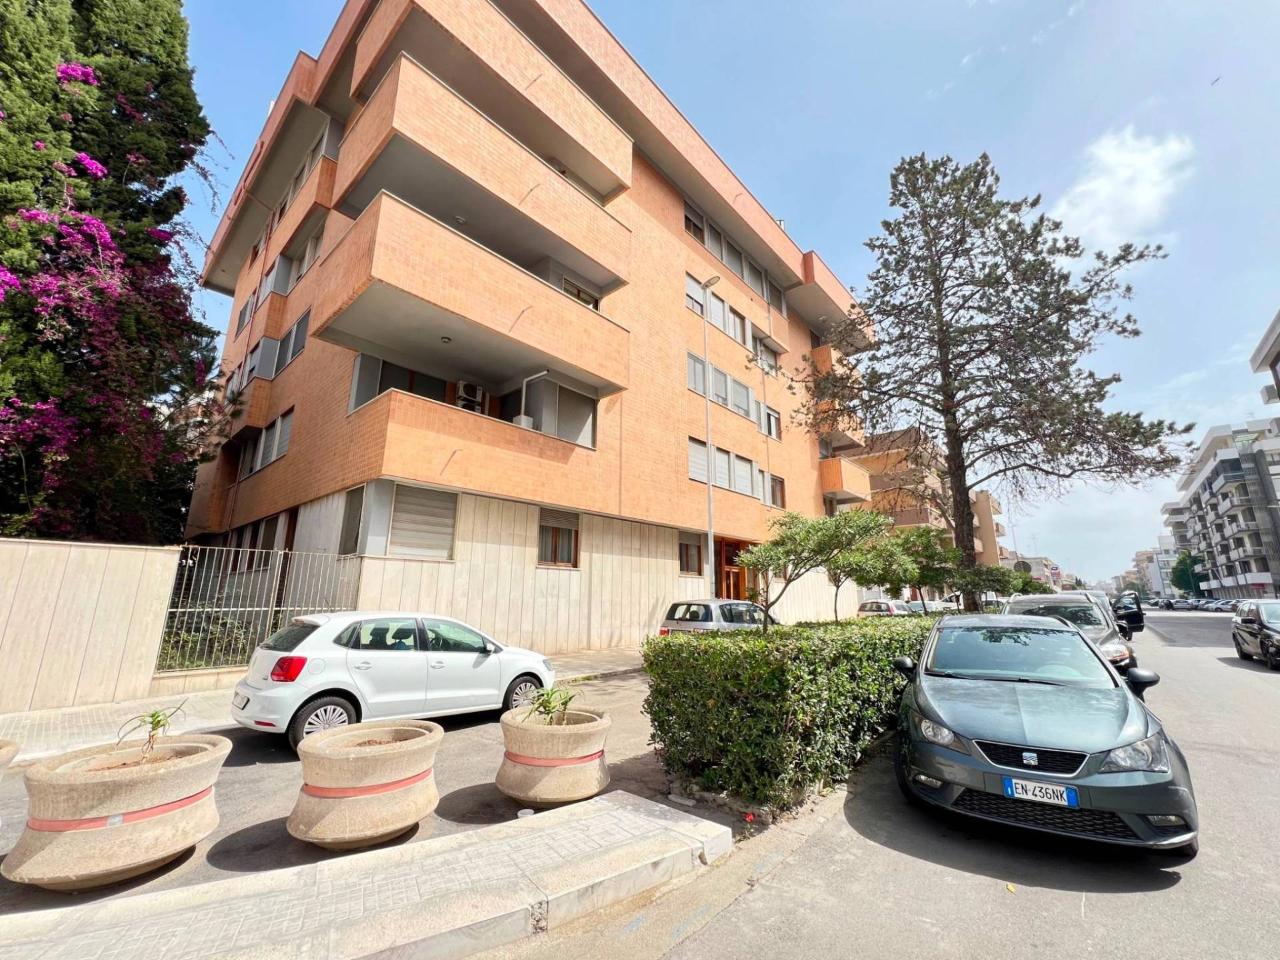 Ufficio condiviso in affitto a Lecce